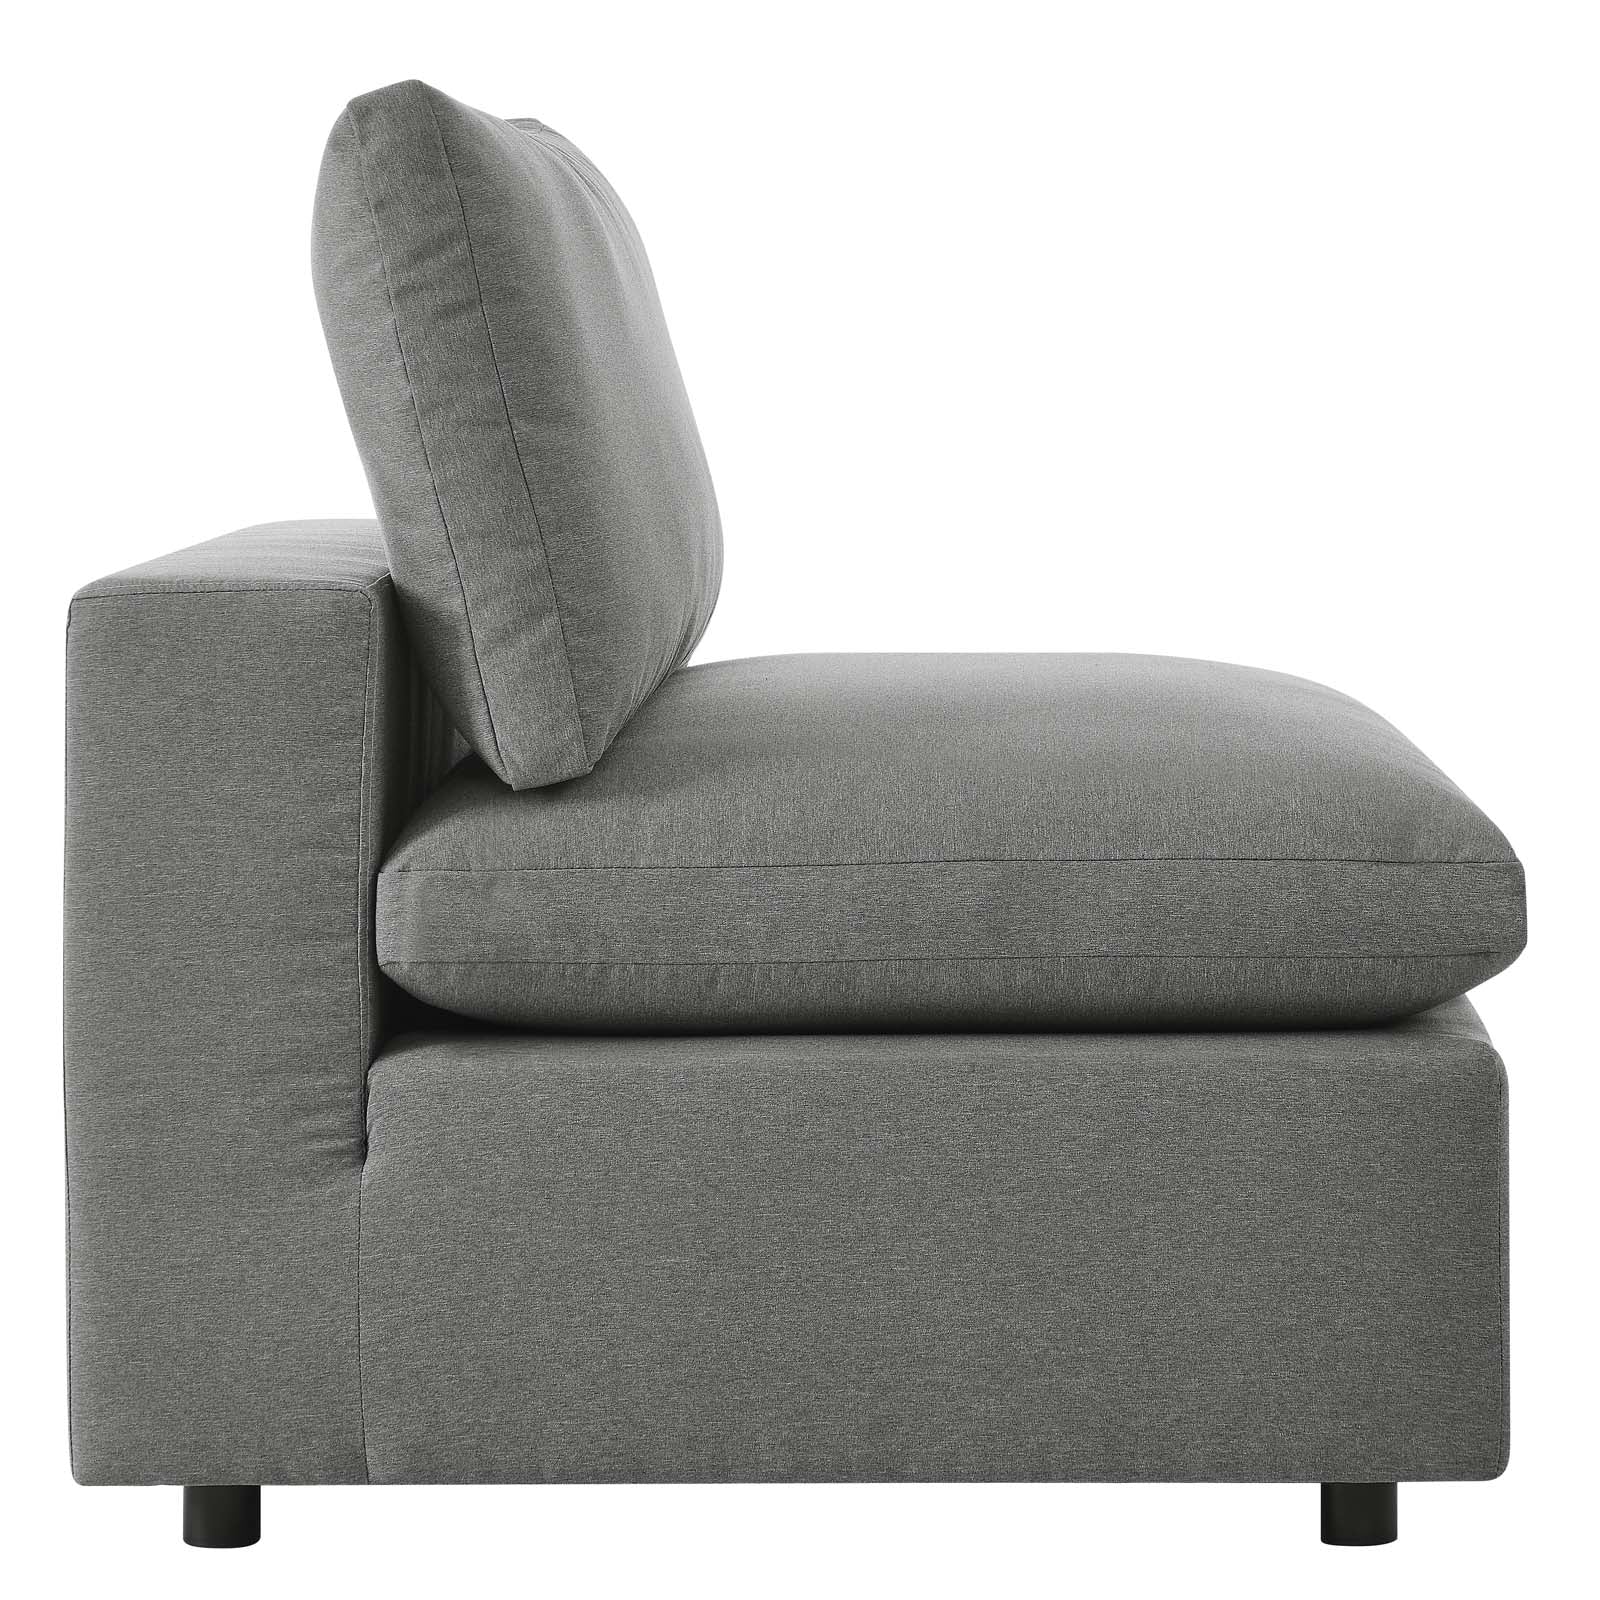 Commix 4-Piece Outdoor Patio Sectional Sofa - Elite Maison